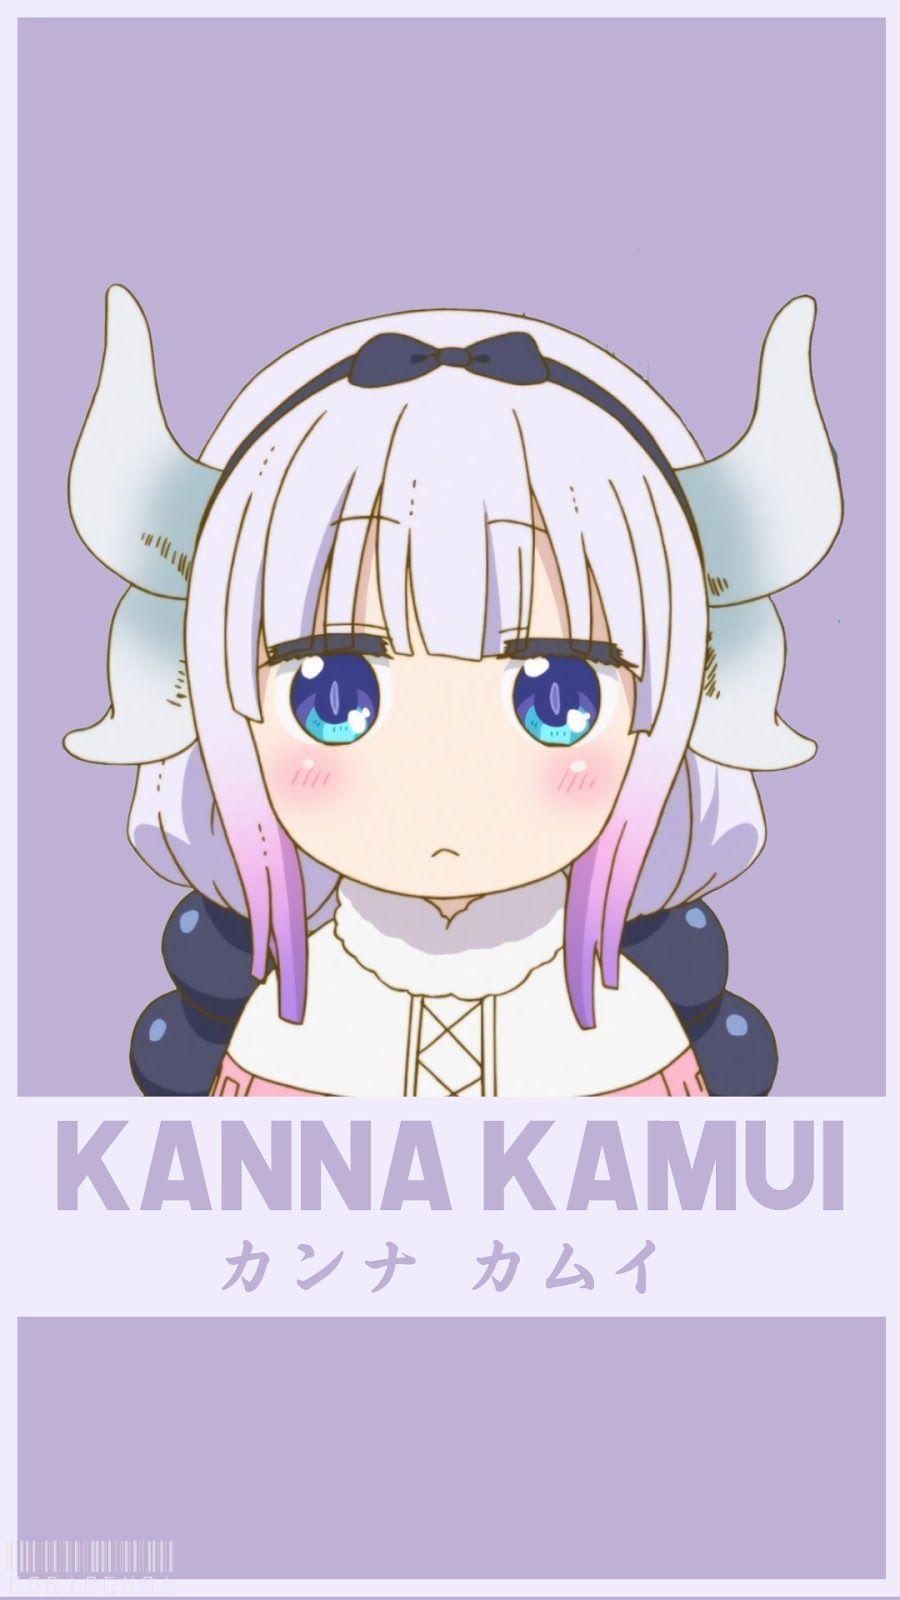 Kanna Kamui. Anime, Personagens de anime, Desenhos de anime